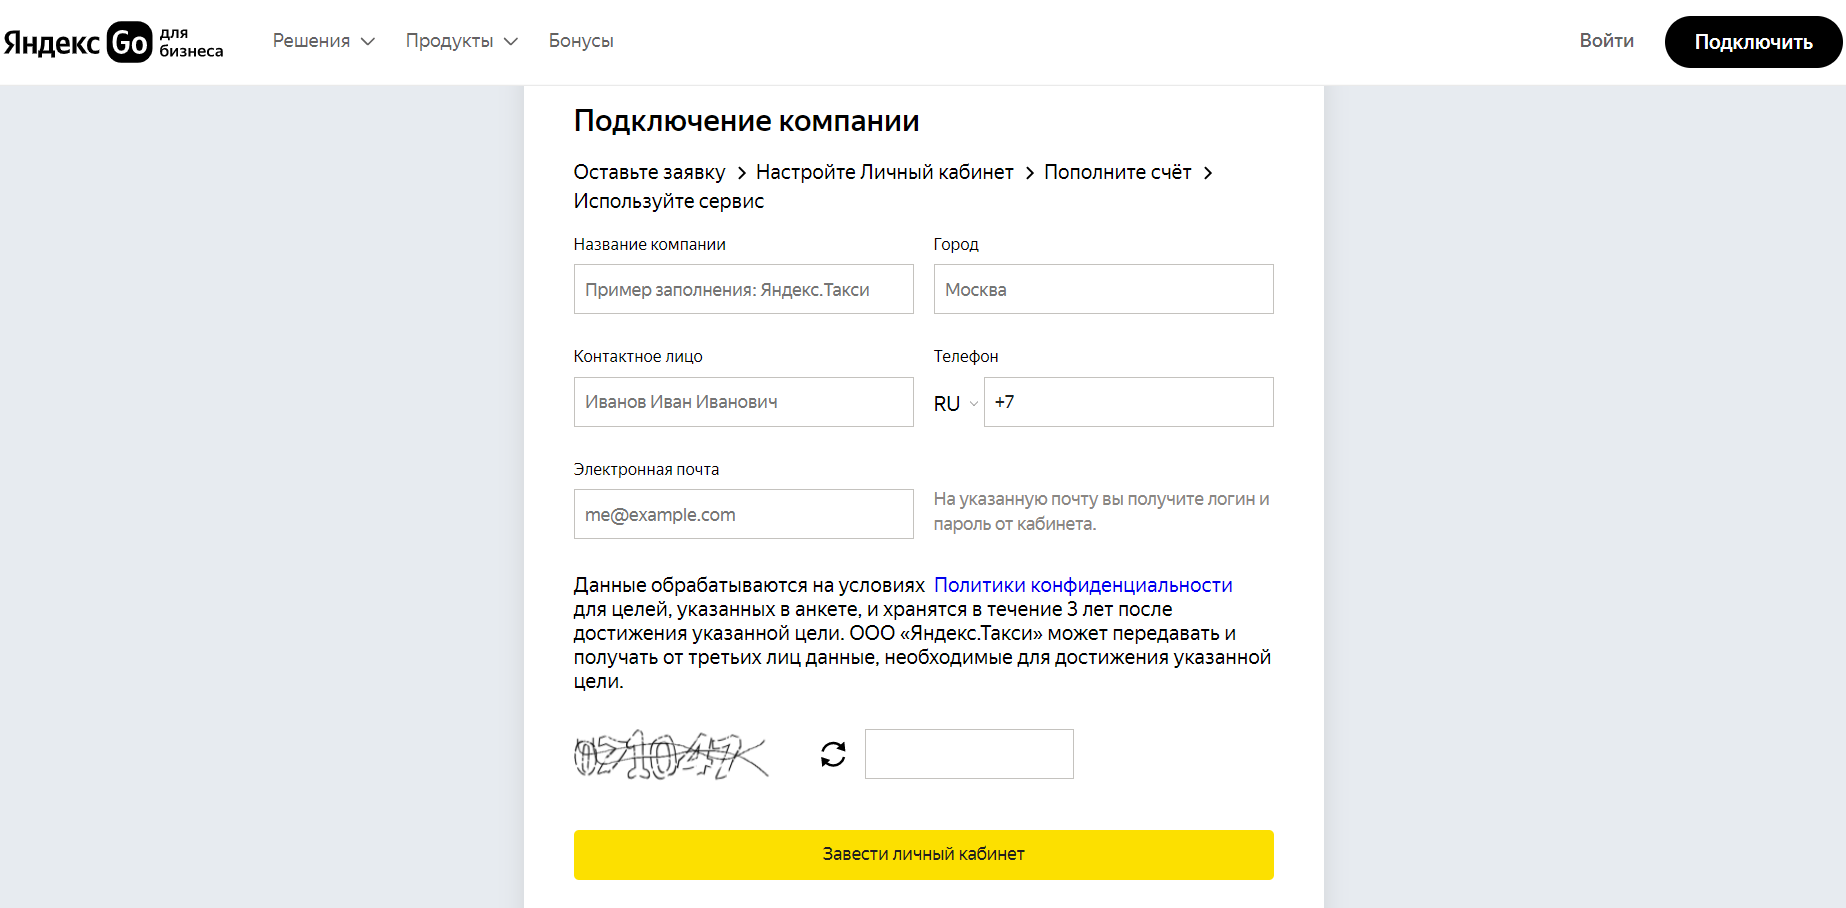 Яндекс Go для бизнеса страница регистрации личного кабинета